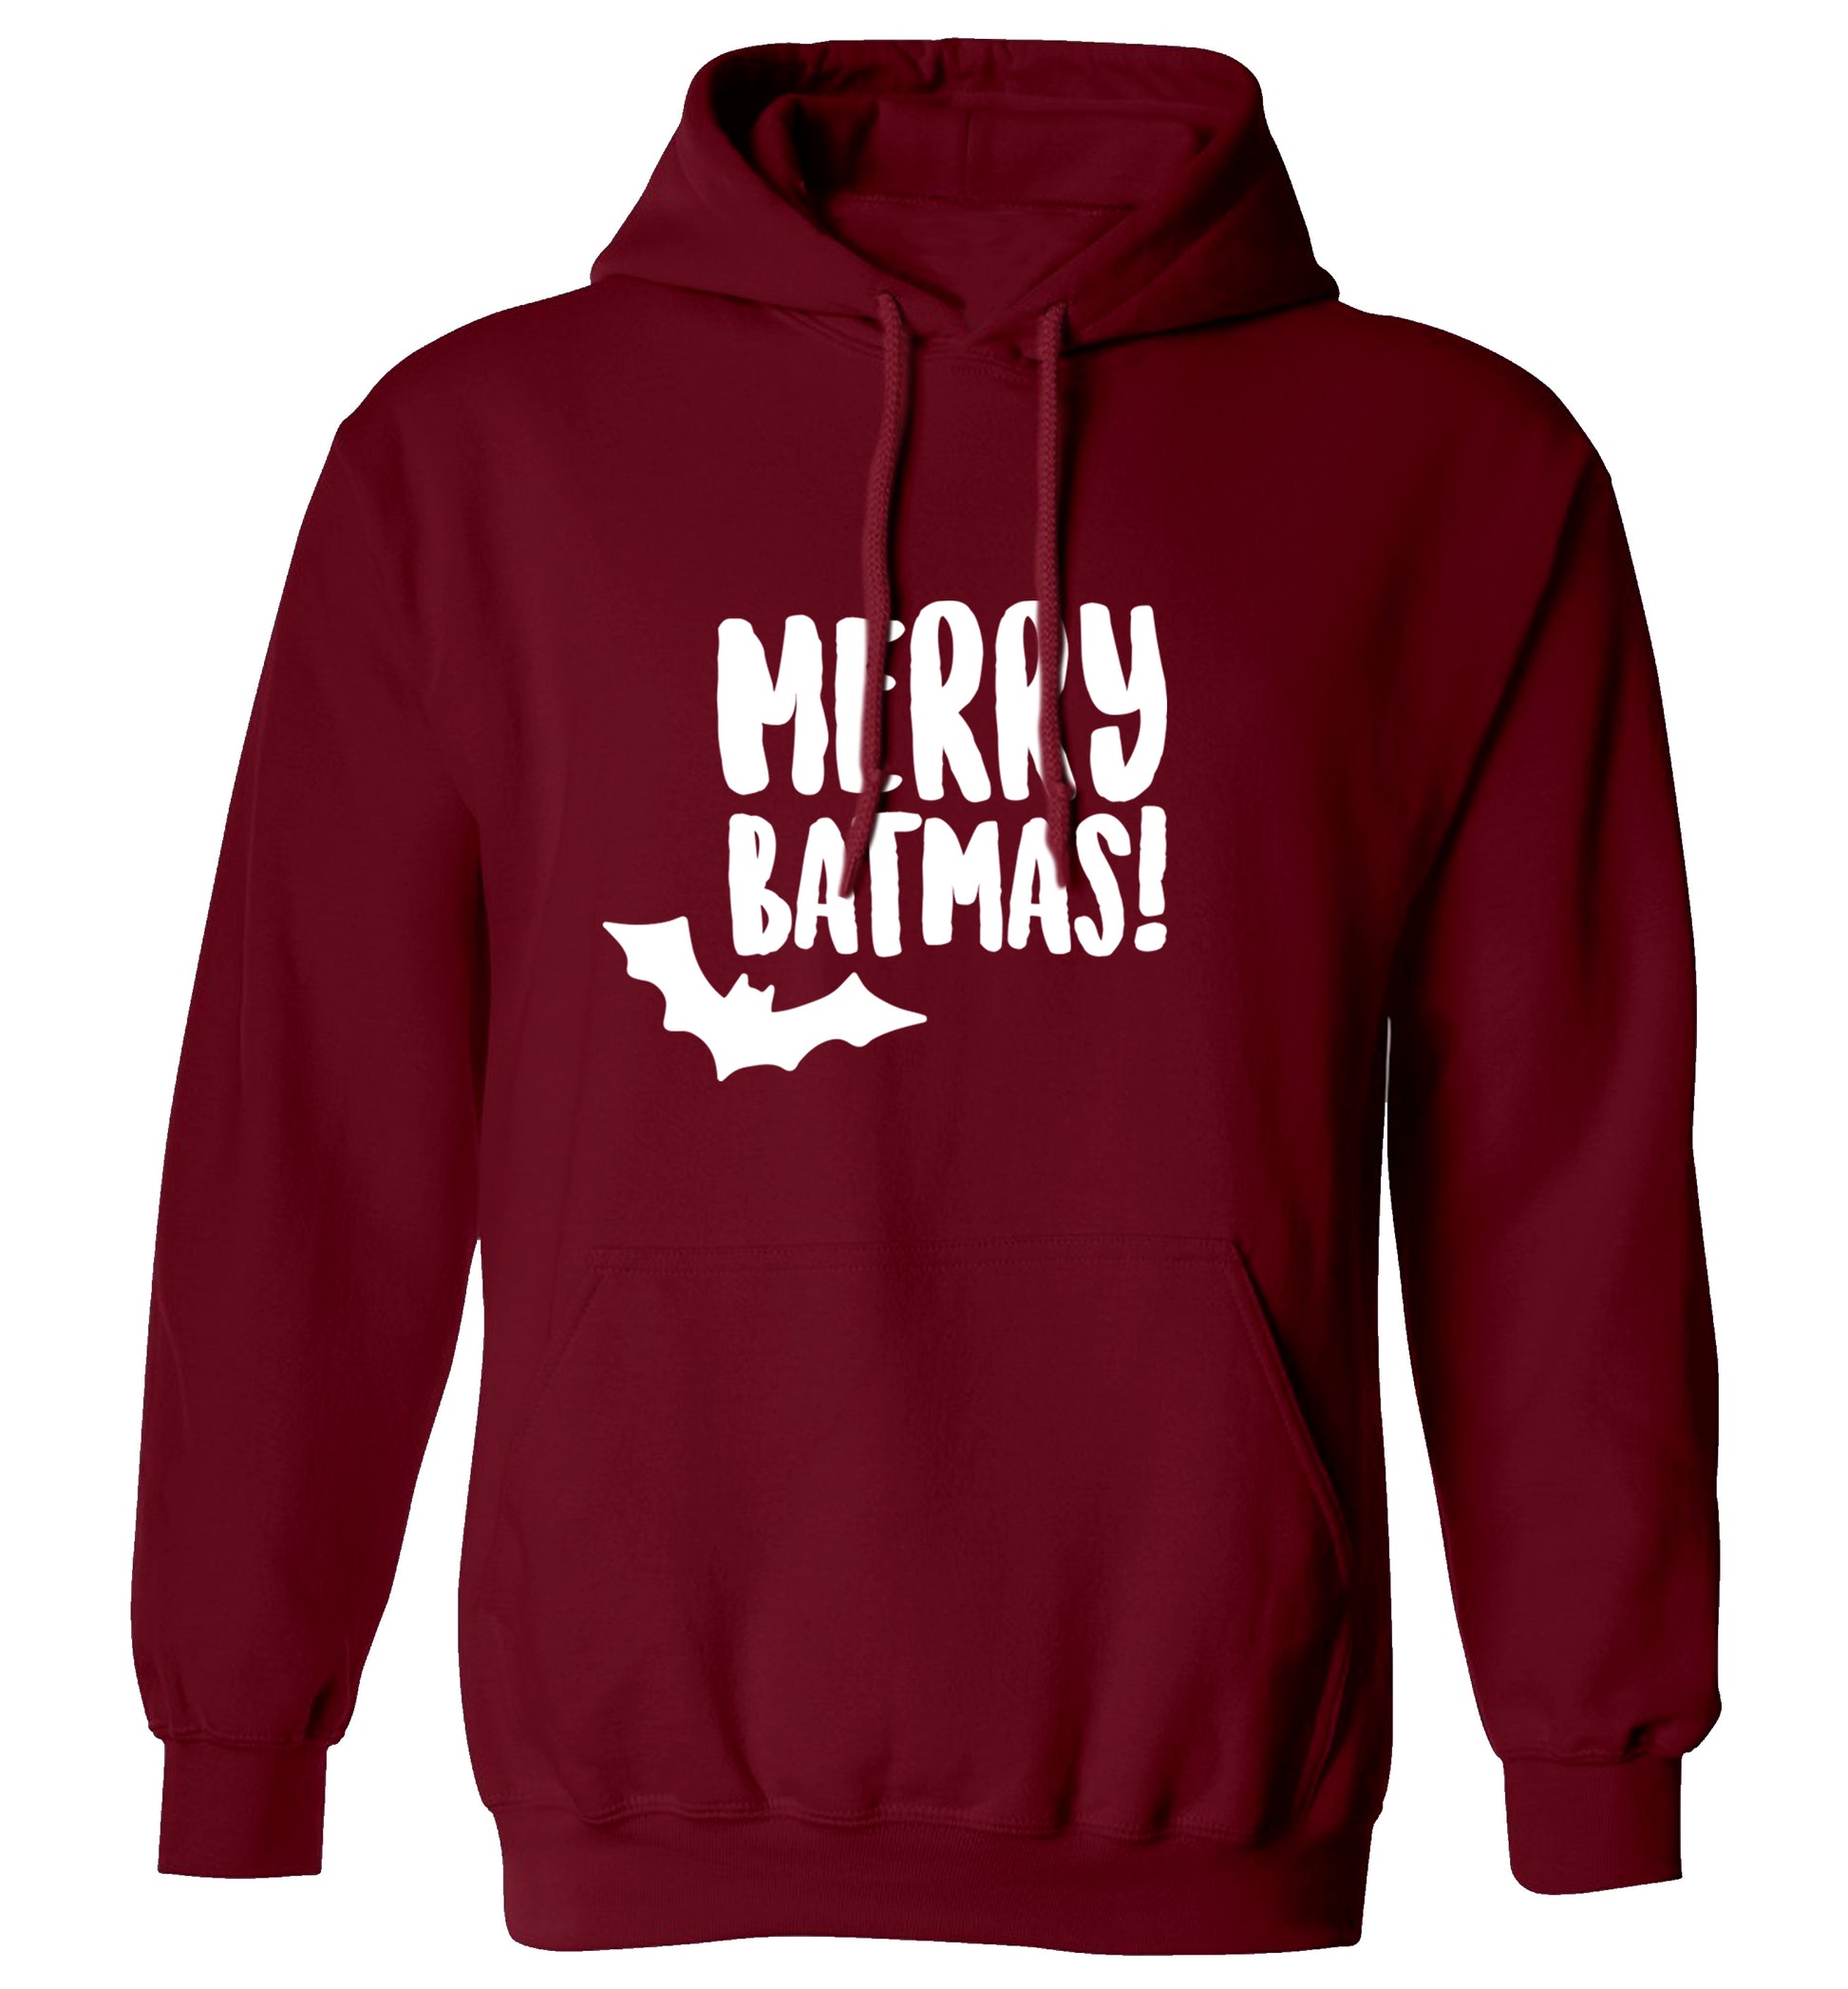 Merry Batmas adults unisex maroon hoodie 2XL